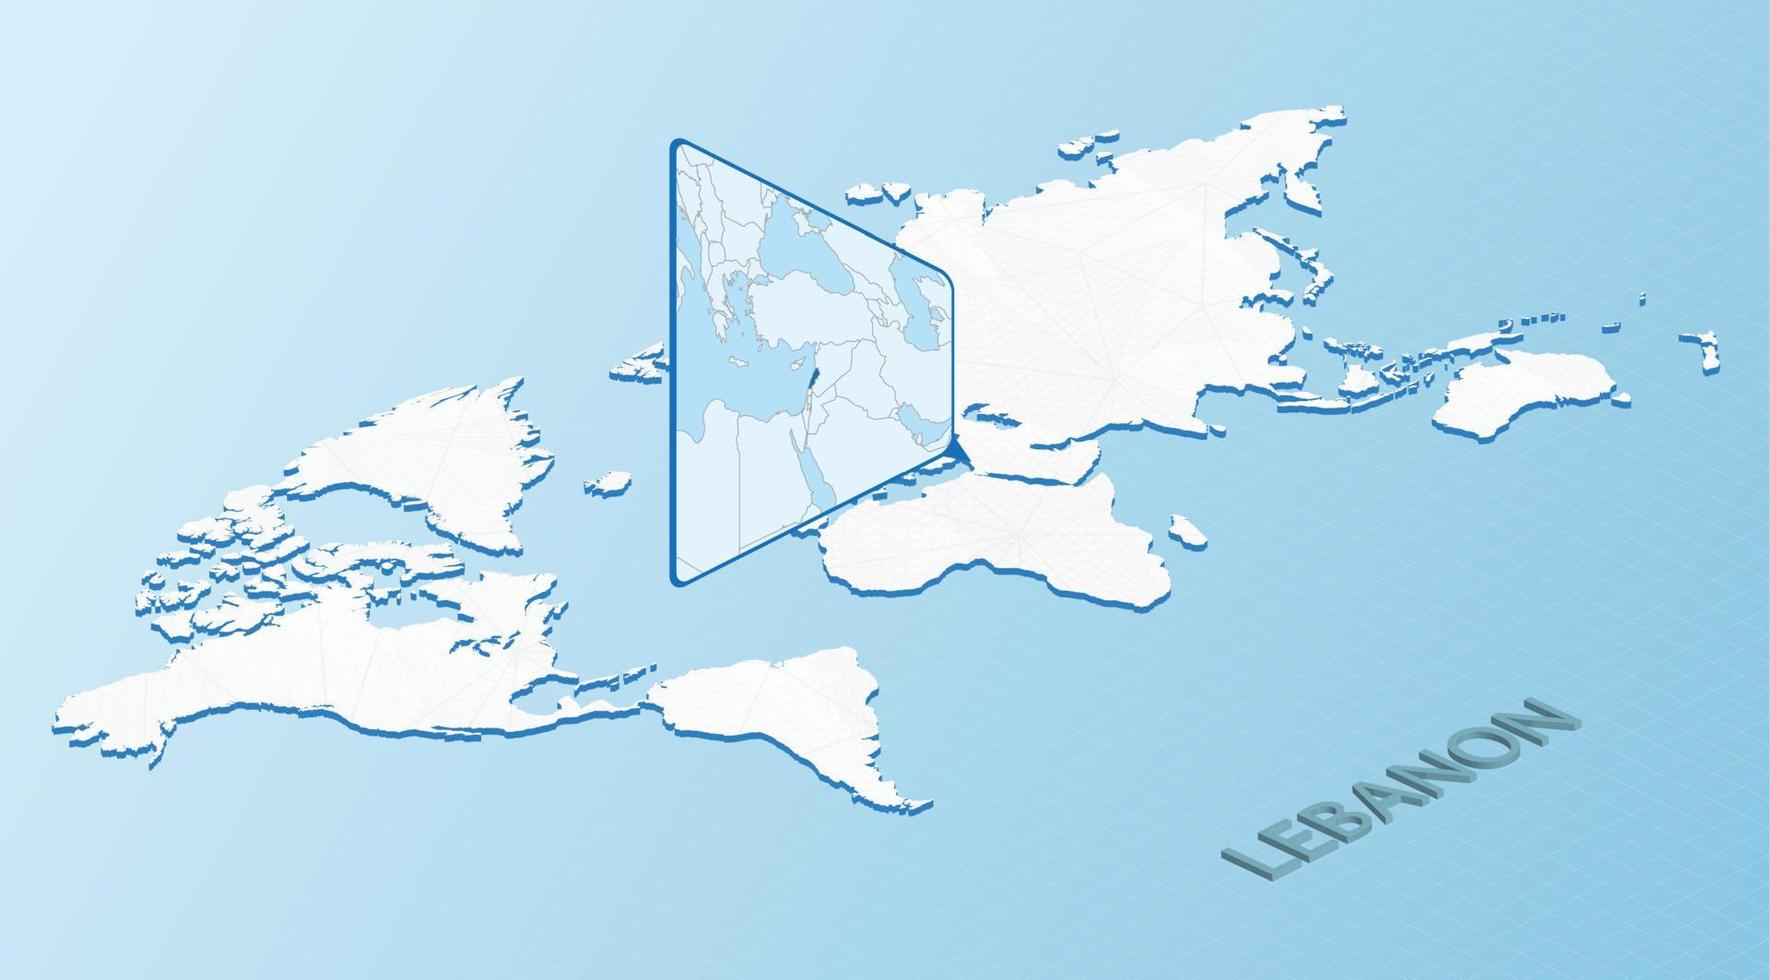 Weltkarte im isometrischen Stil mit detaillierter Karte des Libanon. hellblaue libanonkarte mit abstrakter weltkarte. vektor